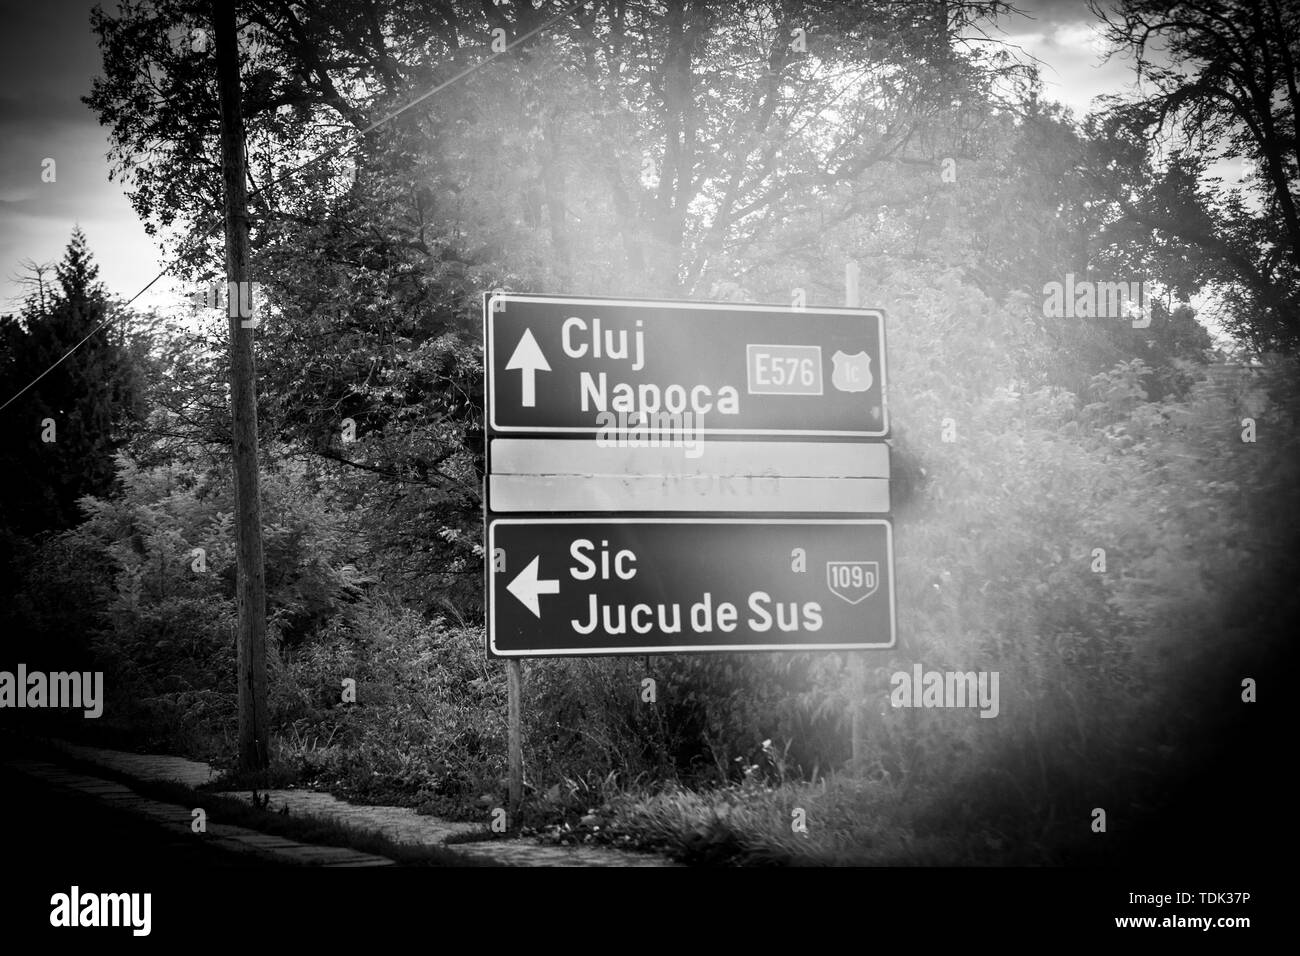 Jucu, Romania - Sep 26, 2013: romeno autostrada con strada segno dotate quasi visibile segno di nokia Nokia dopo la Finlandia ha chiuso la fabbrica vicino a Cluj nel 2011 Foto Stock